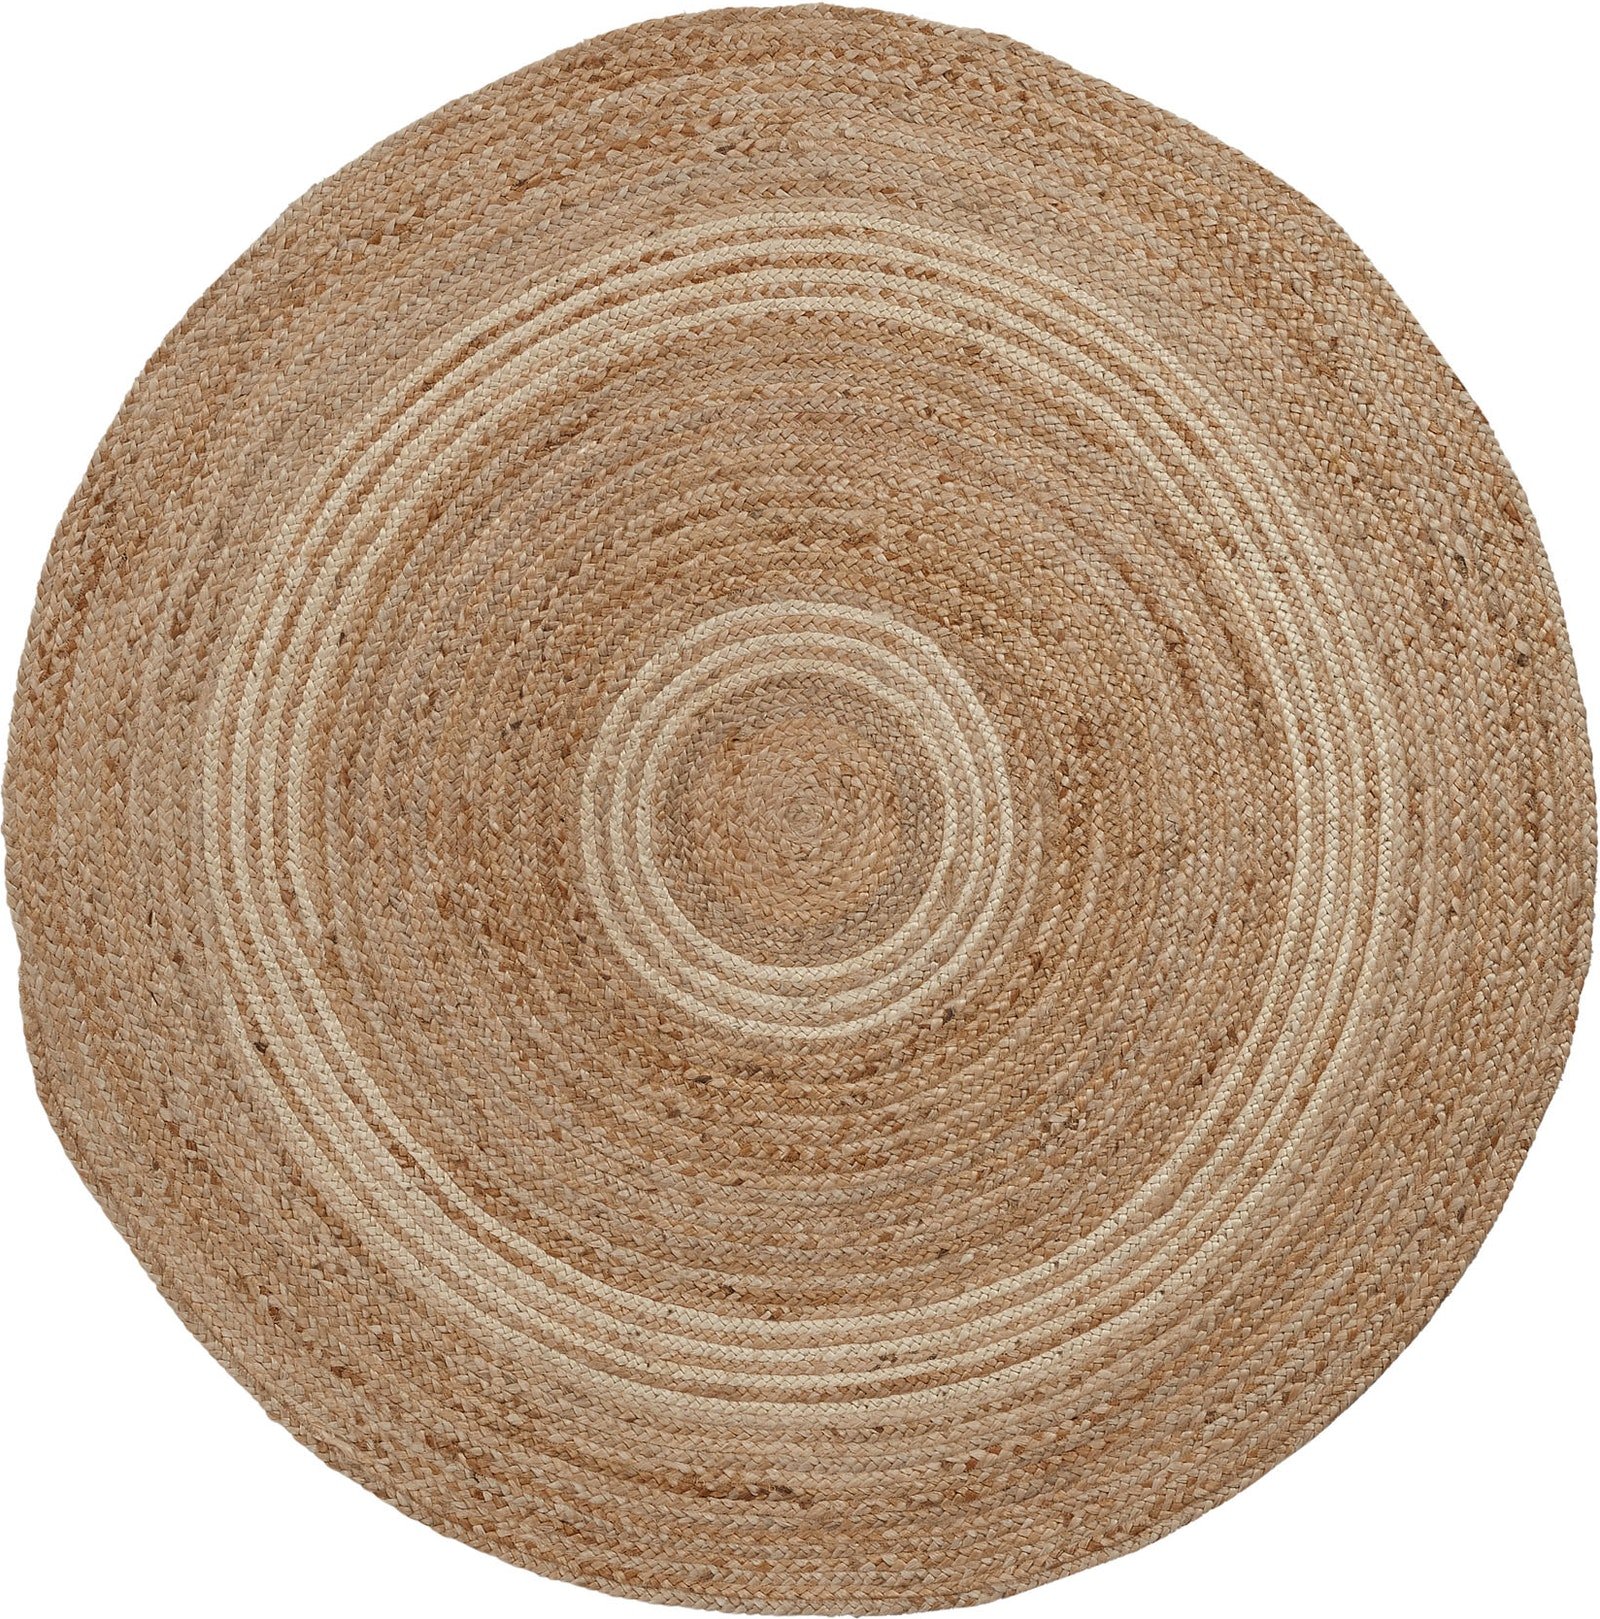 4: LAFORMA Samy gulvtæppe - natur/grå jute, rund (Ø100)